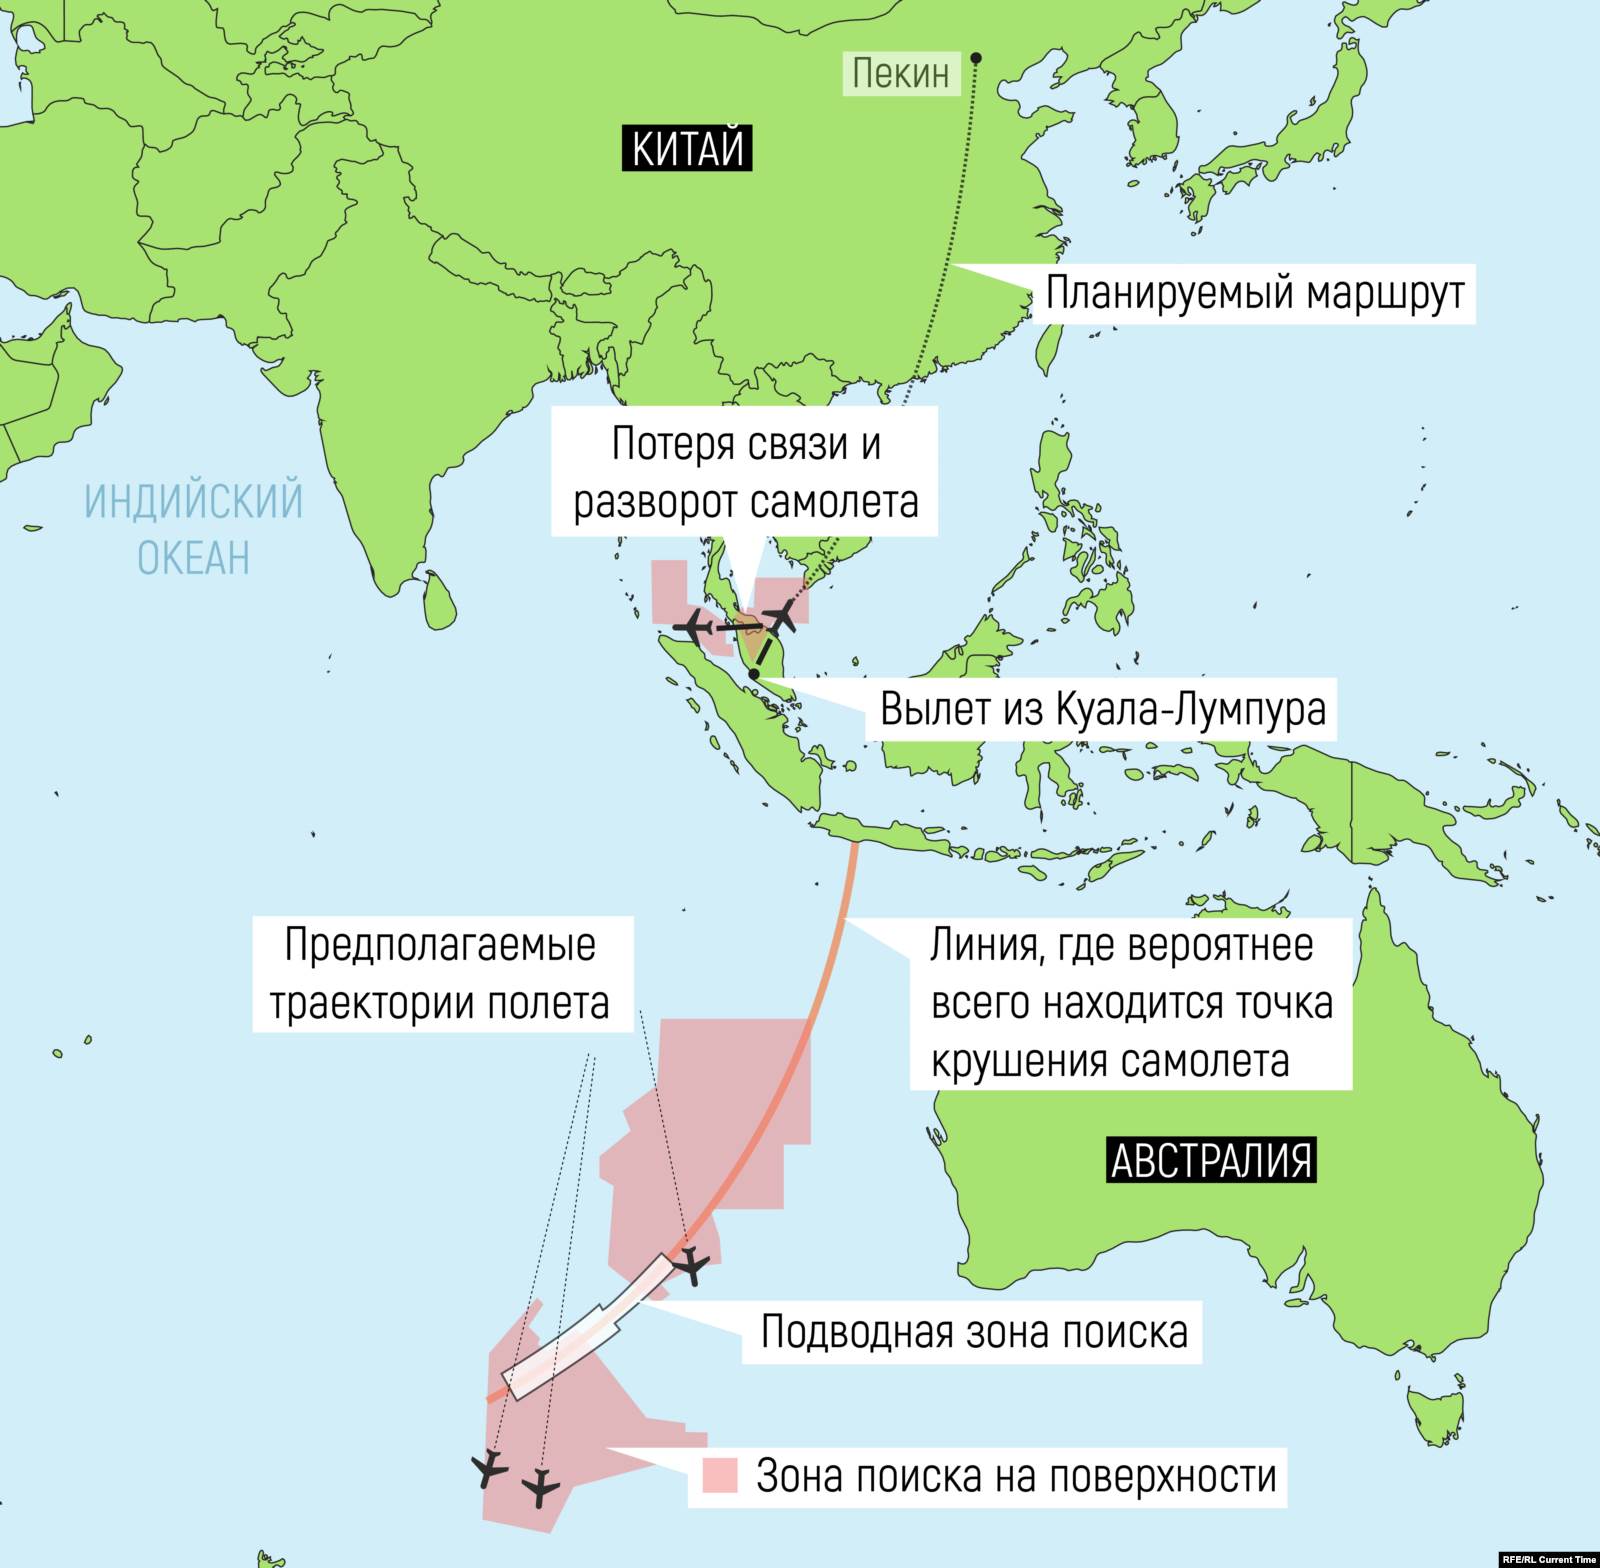 Предполагаемая траектория полета и зоны поисков MH370. Иллюстрация: Любовь Моисеенко для Настоящего Времени